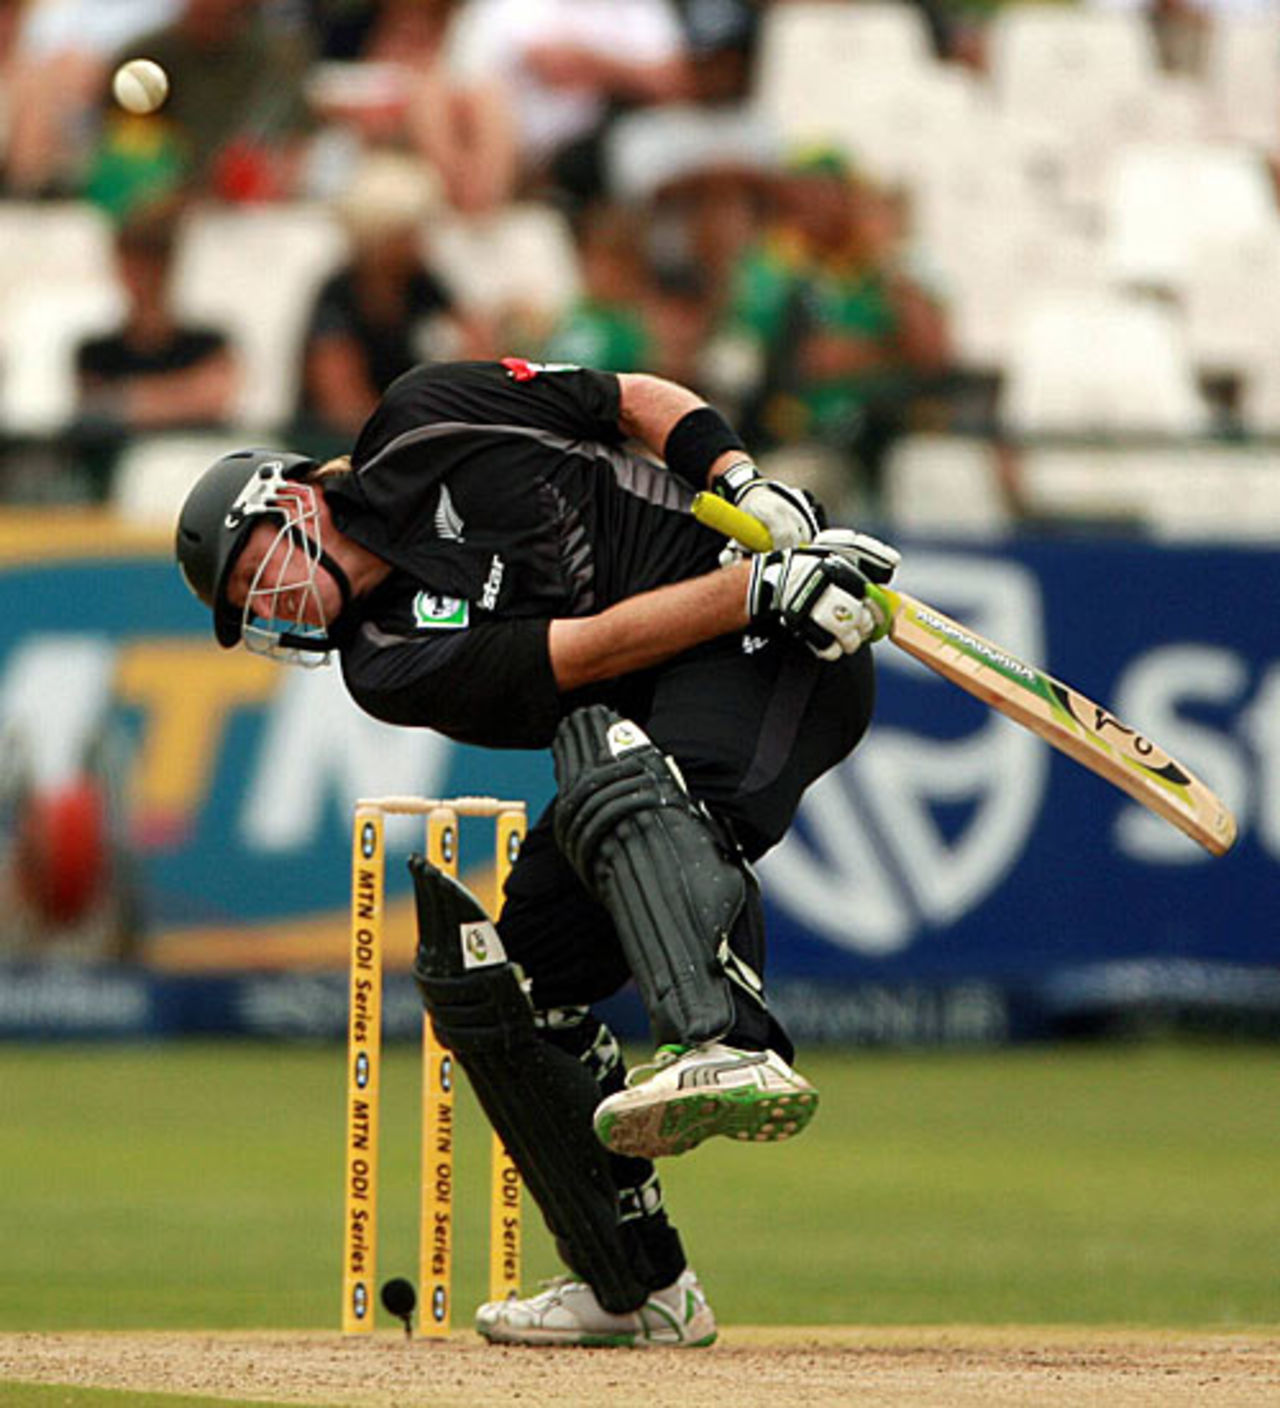 Scott Styris ducks beneath a bumper, South Africa v New Zealand, 3rd ODI, Cape Town, December 2, 2007